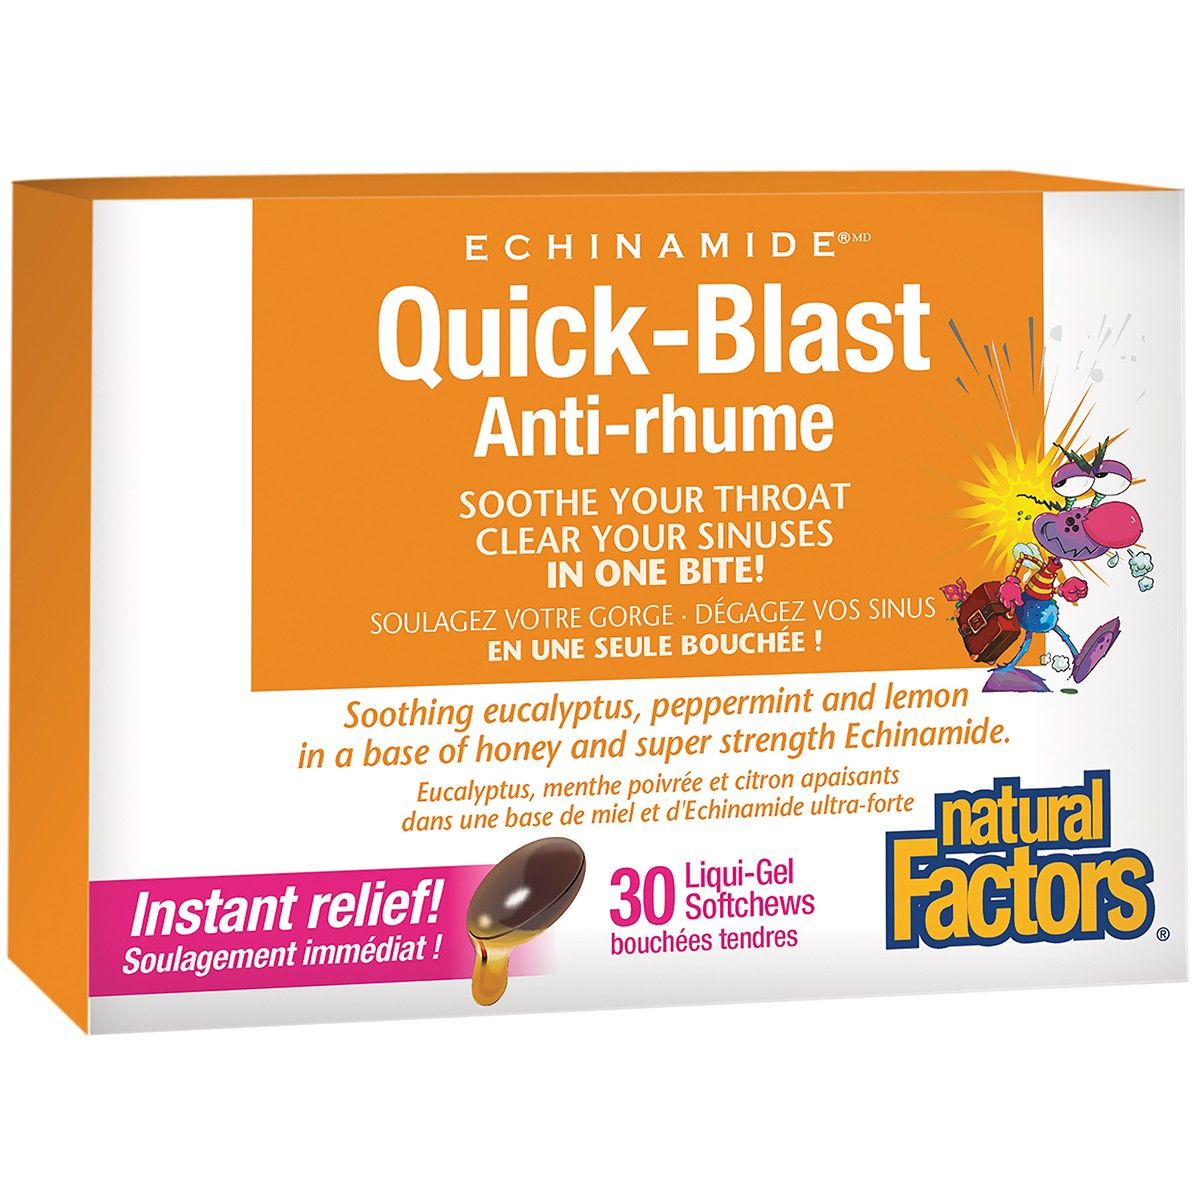 Quick Blast 30 Liquid-gel Softchews